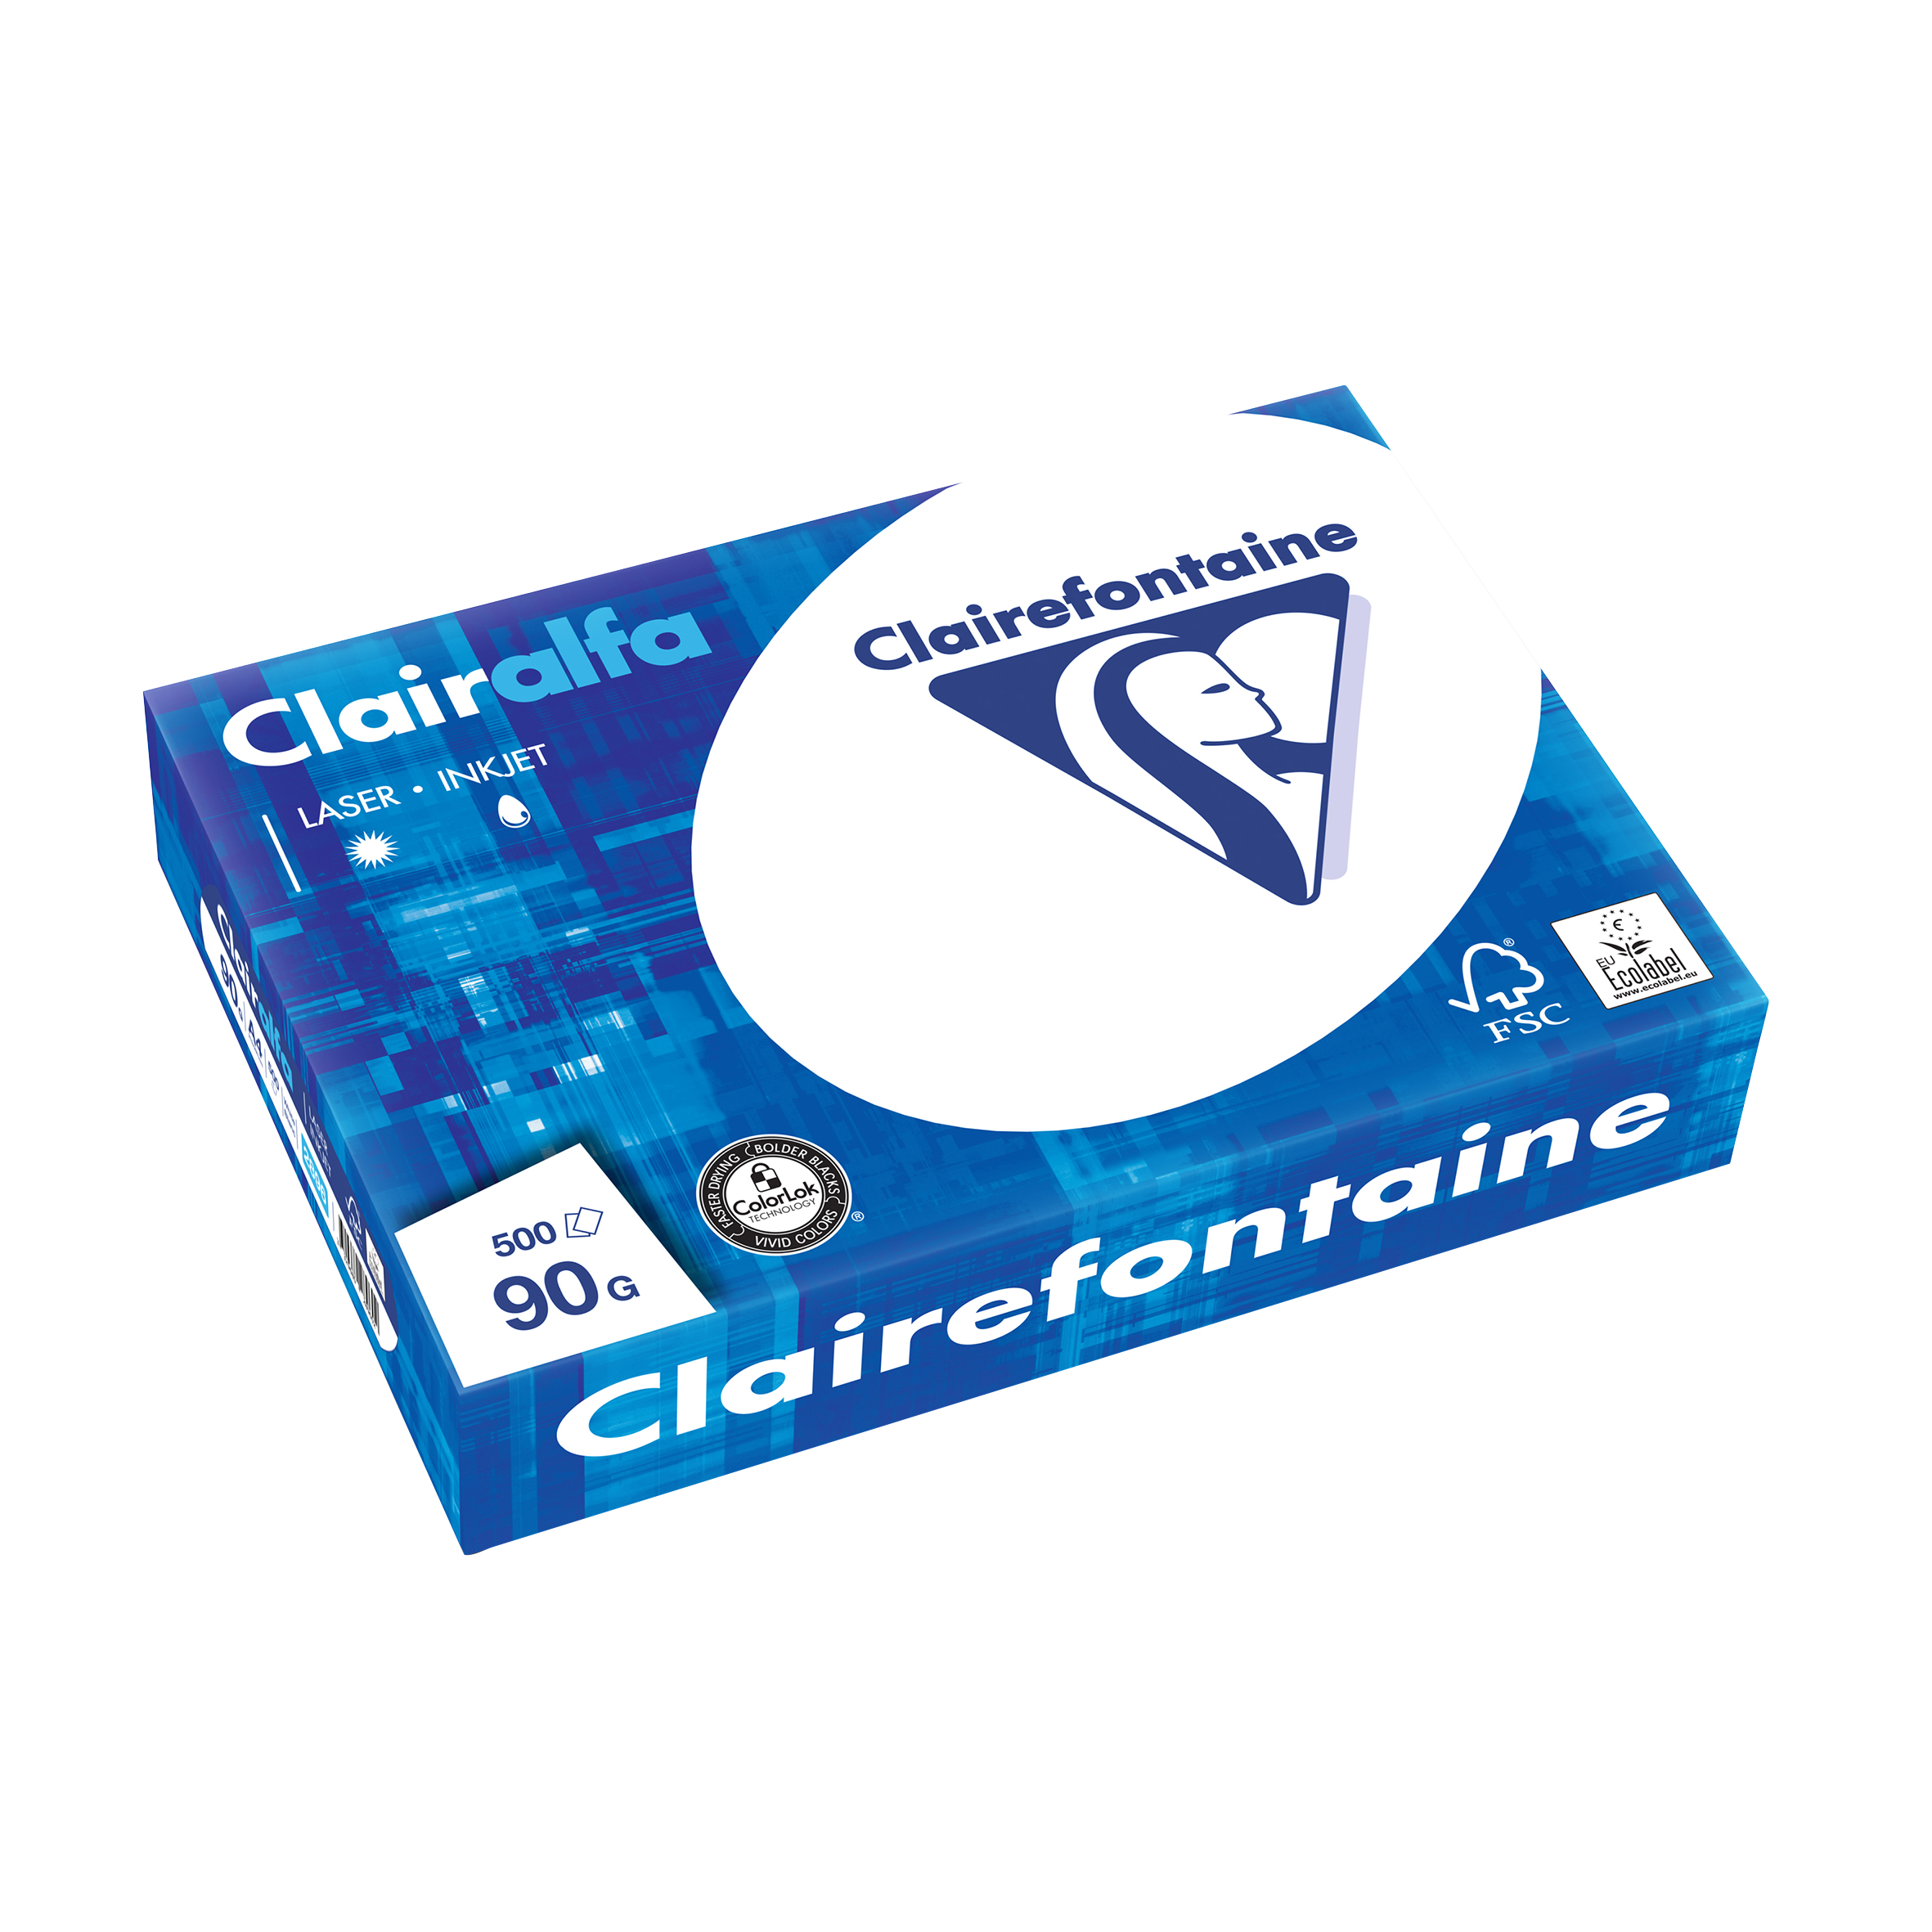 Clairefontaine - Papier blanc - A4 (210 x 297 mm) - 90 g/m² - 2500 feuilles (carton de 5 ramettes)